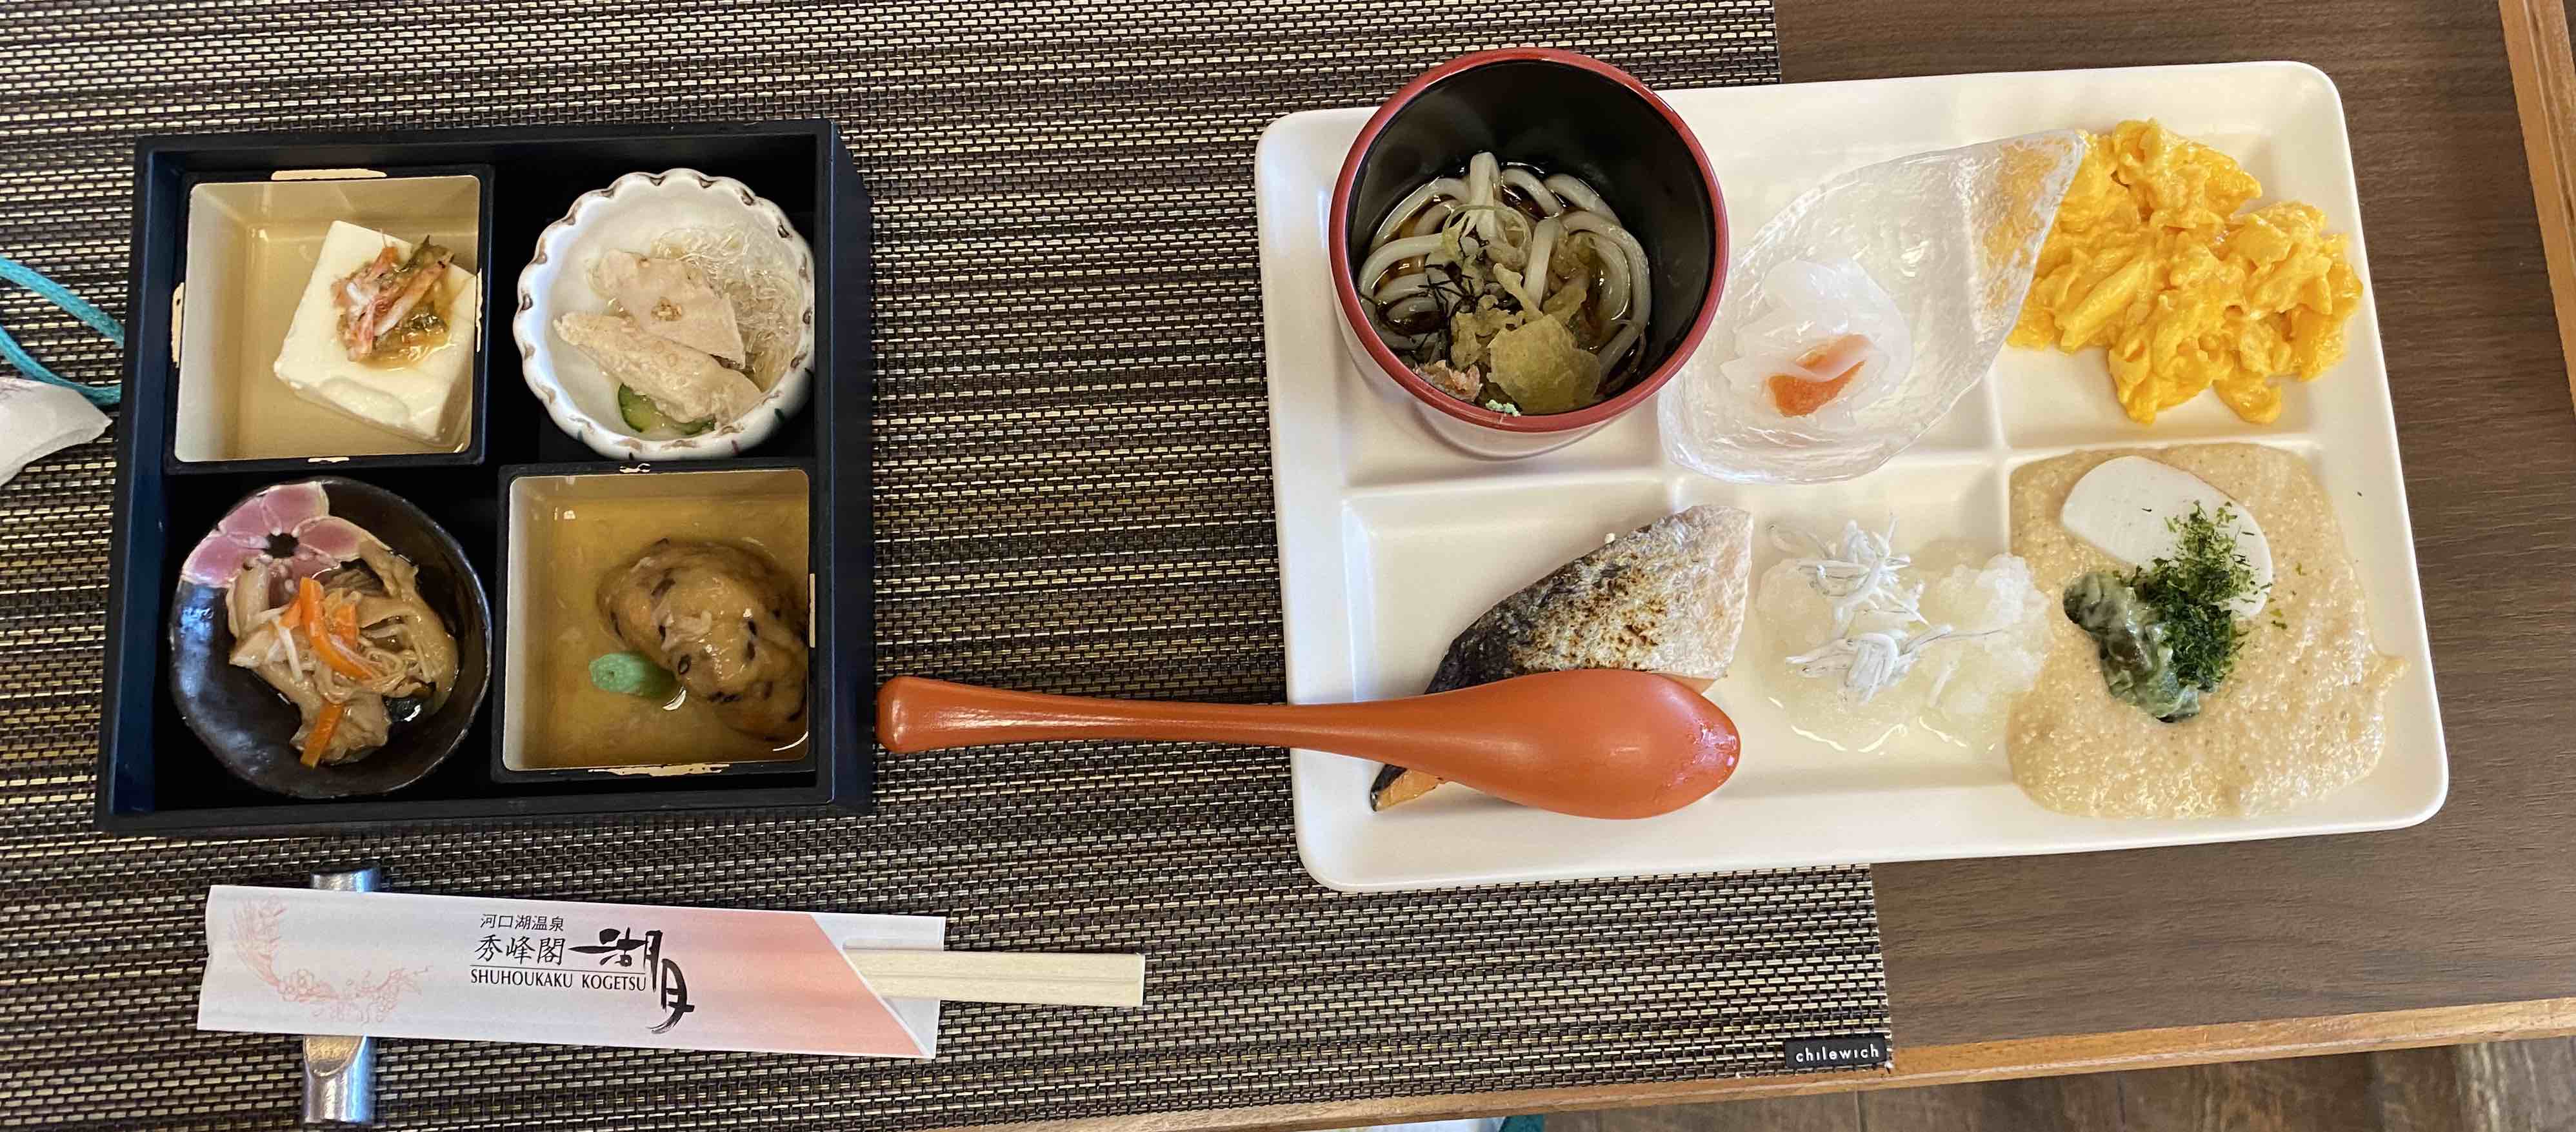 Onsen breakfast